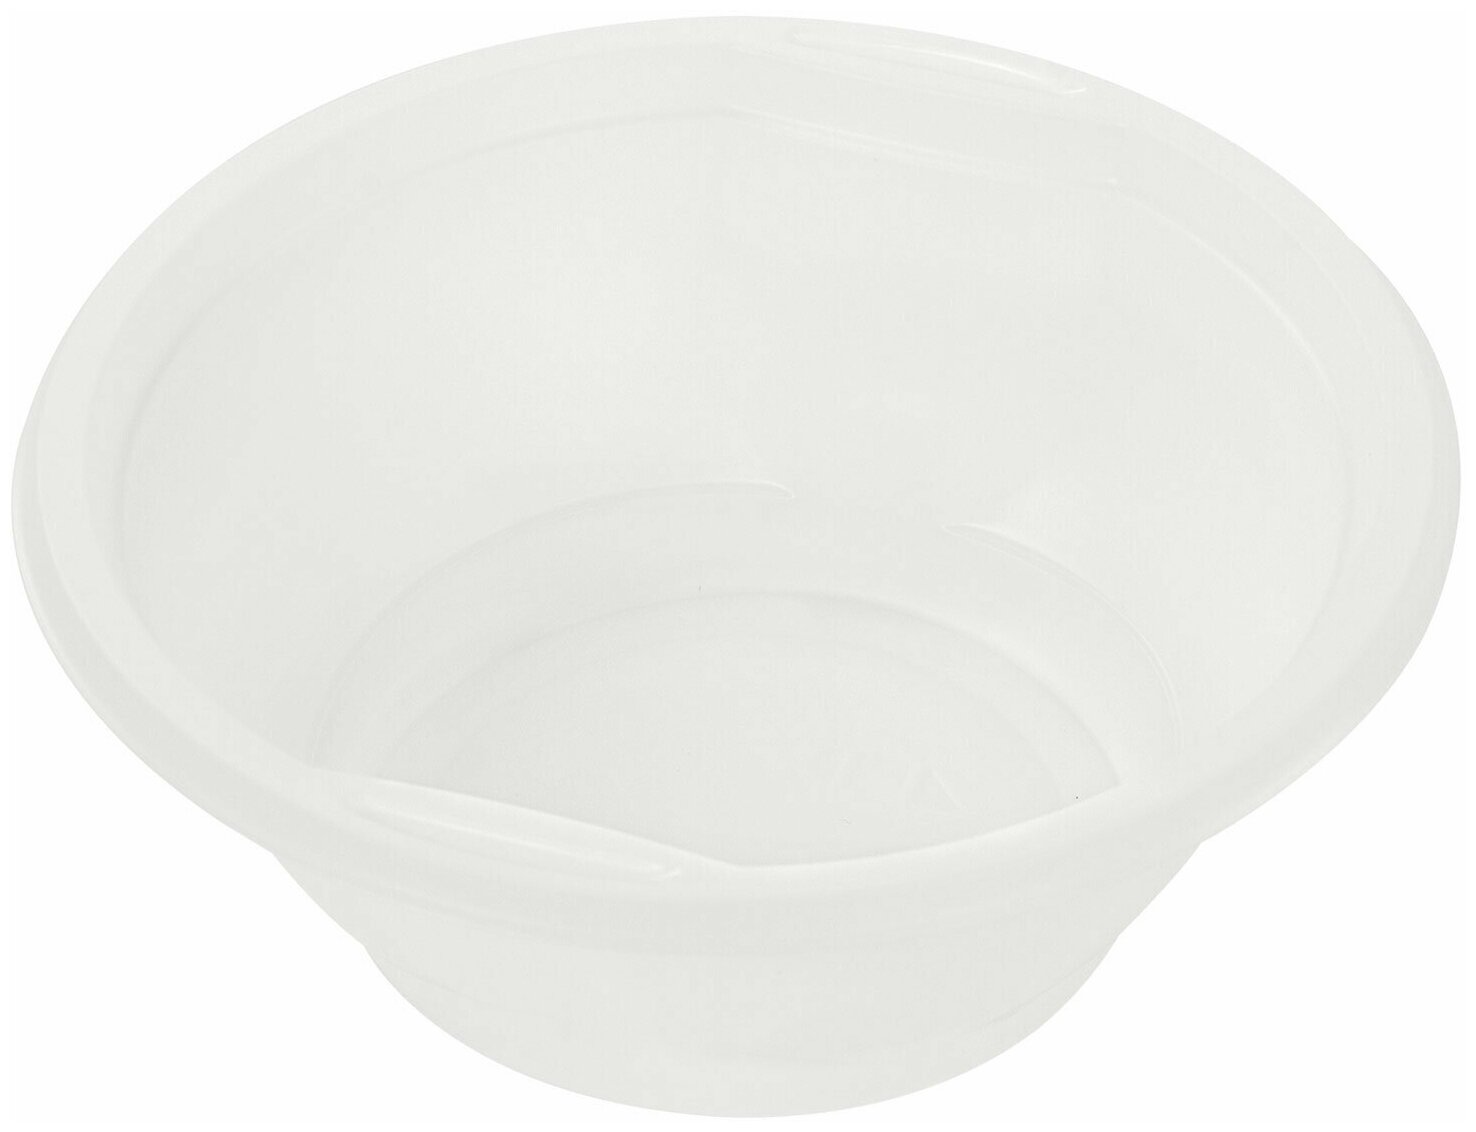 Одноразовые тарелки суповые, комплект 50шт, 0,6л, стандарт, белые, ПП, хол/гор, LAIMA, 606710